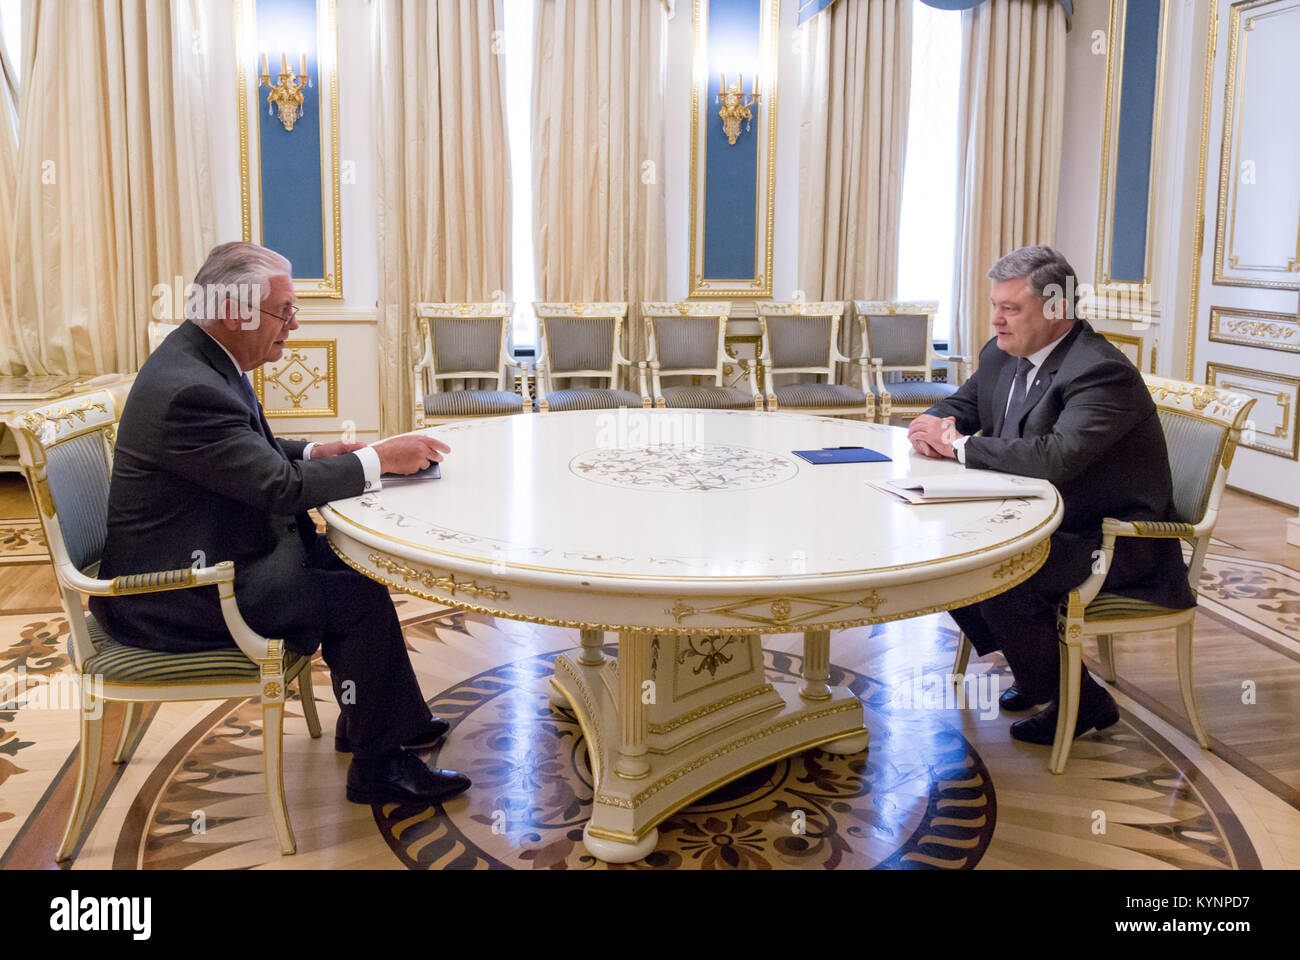 La secrétaire d'État des États-Unis, Rex Tillerson s'entretient avec le Président Petro Poroshenko avant leur réunion bilatérale à Kiev, Ukraine, le 9 juillet 2017. Tillerson secrétaire rencontre le président Poroshenko 35689050181 o Banque D'Images